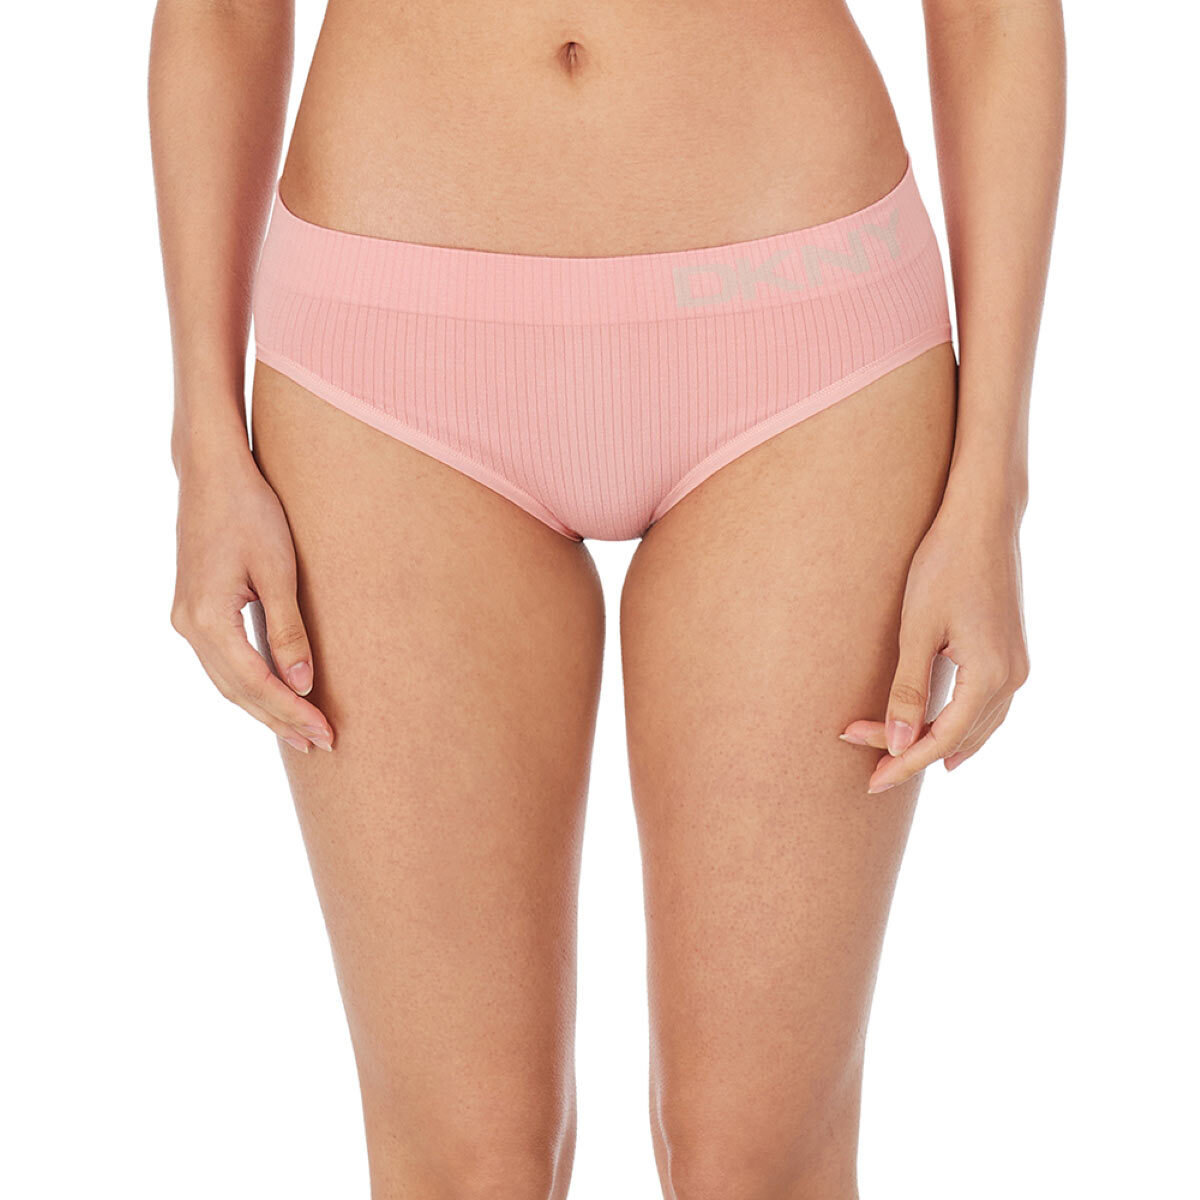 DKNY Women's Seamless Rib Knit 4 Pack Bikini Brief in Pink/Nude